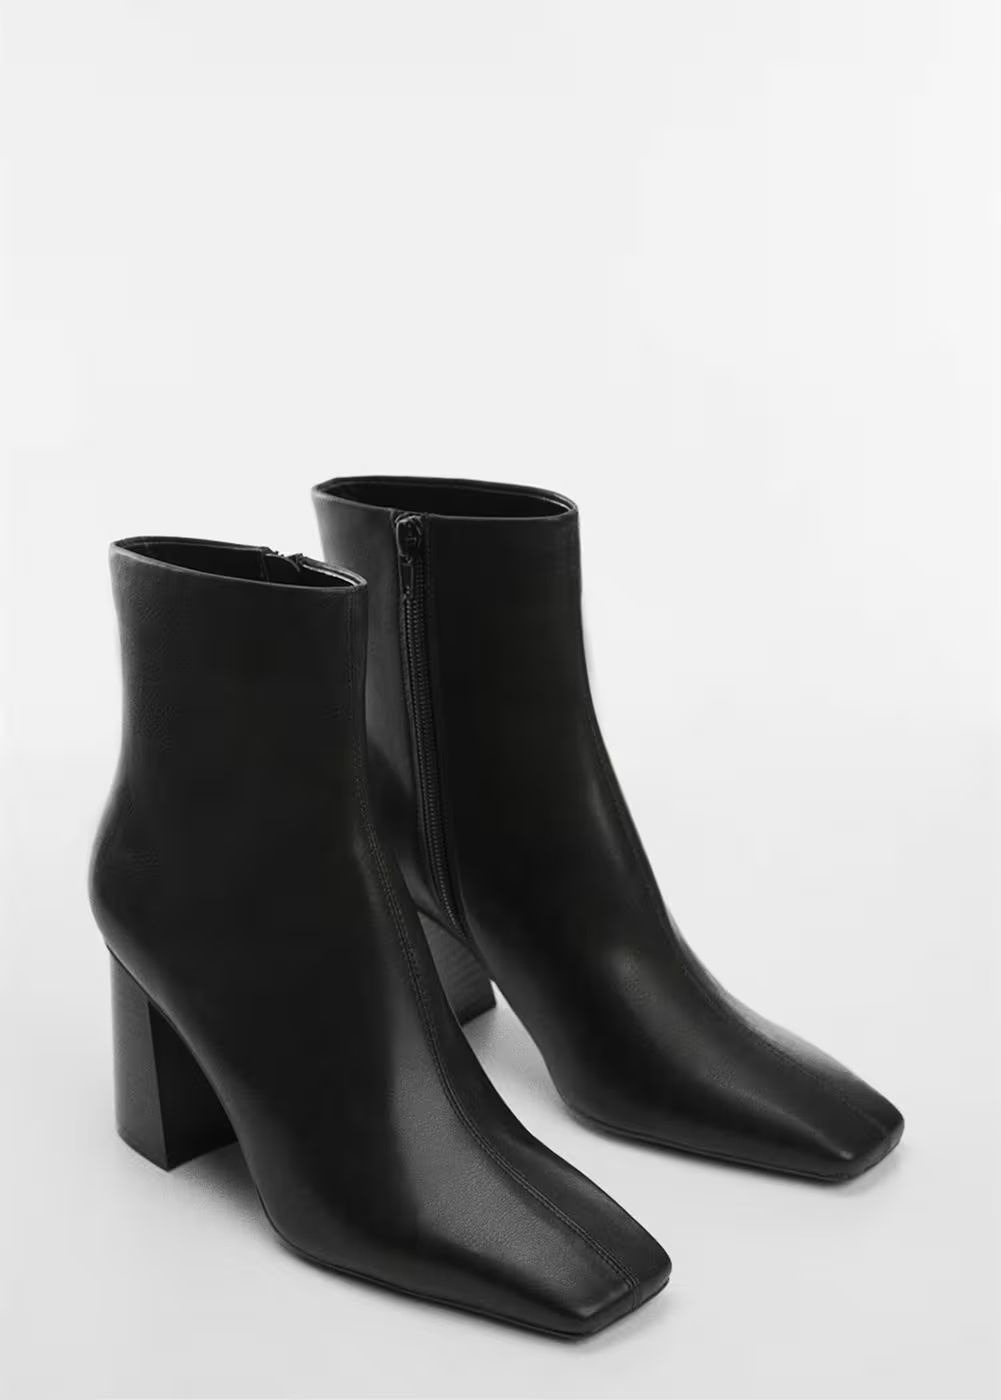 Ankle boots with square toe heel -  Women | Mango United Kingdom | MANGO (UK)